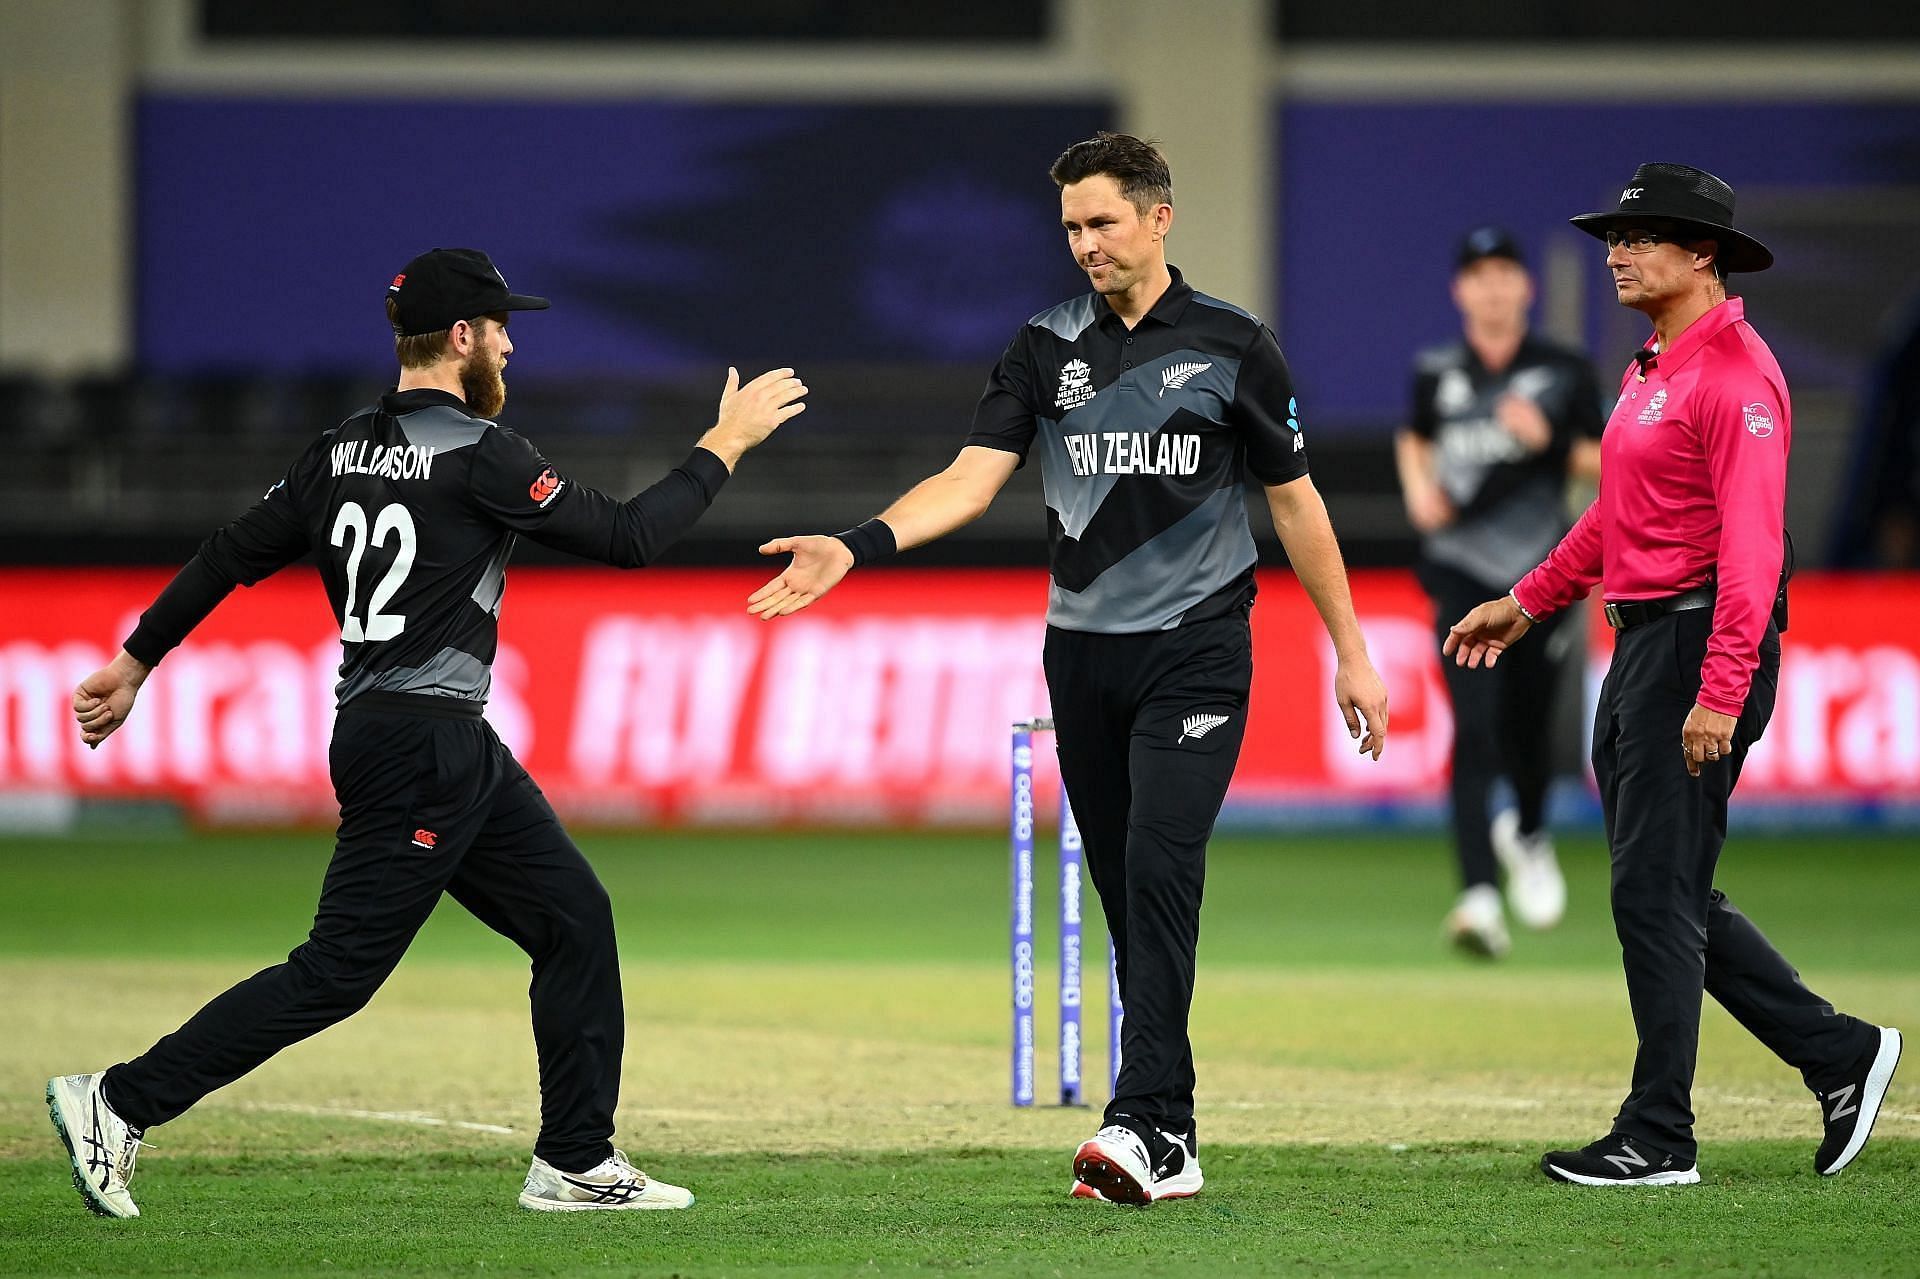 इंग्लैंड और न्यूजीलैंड के बीच सेमीफाइनल मुकाबला खेला जाएगा